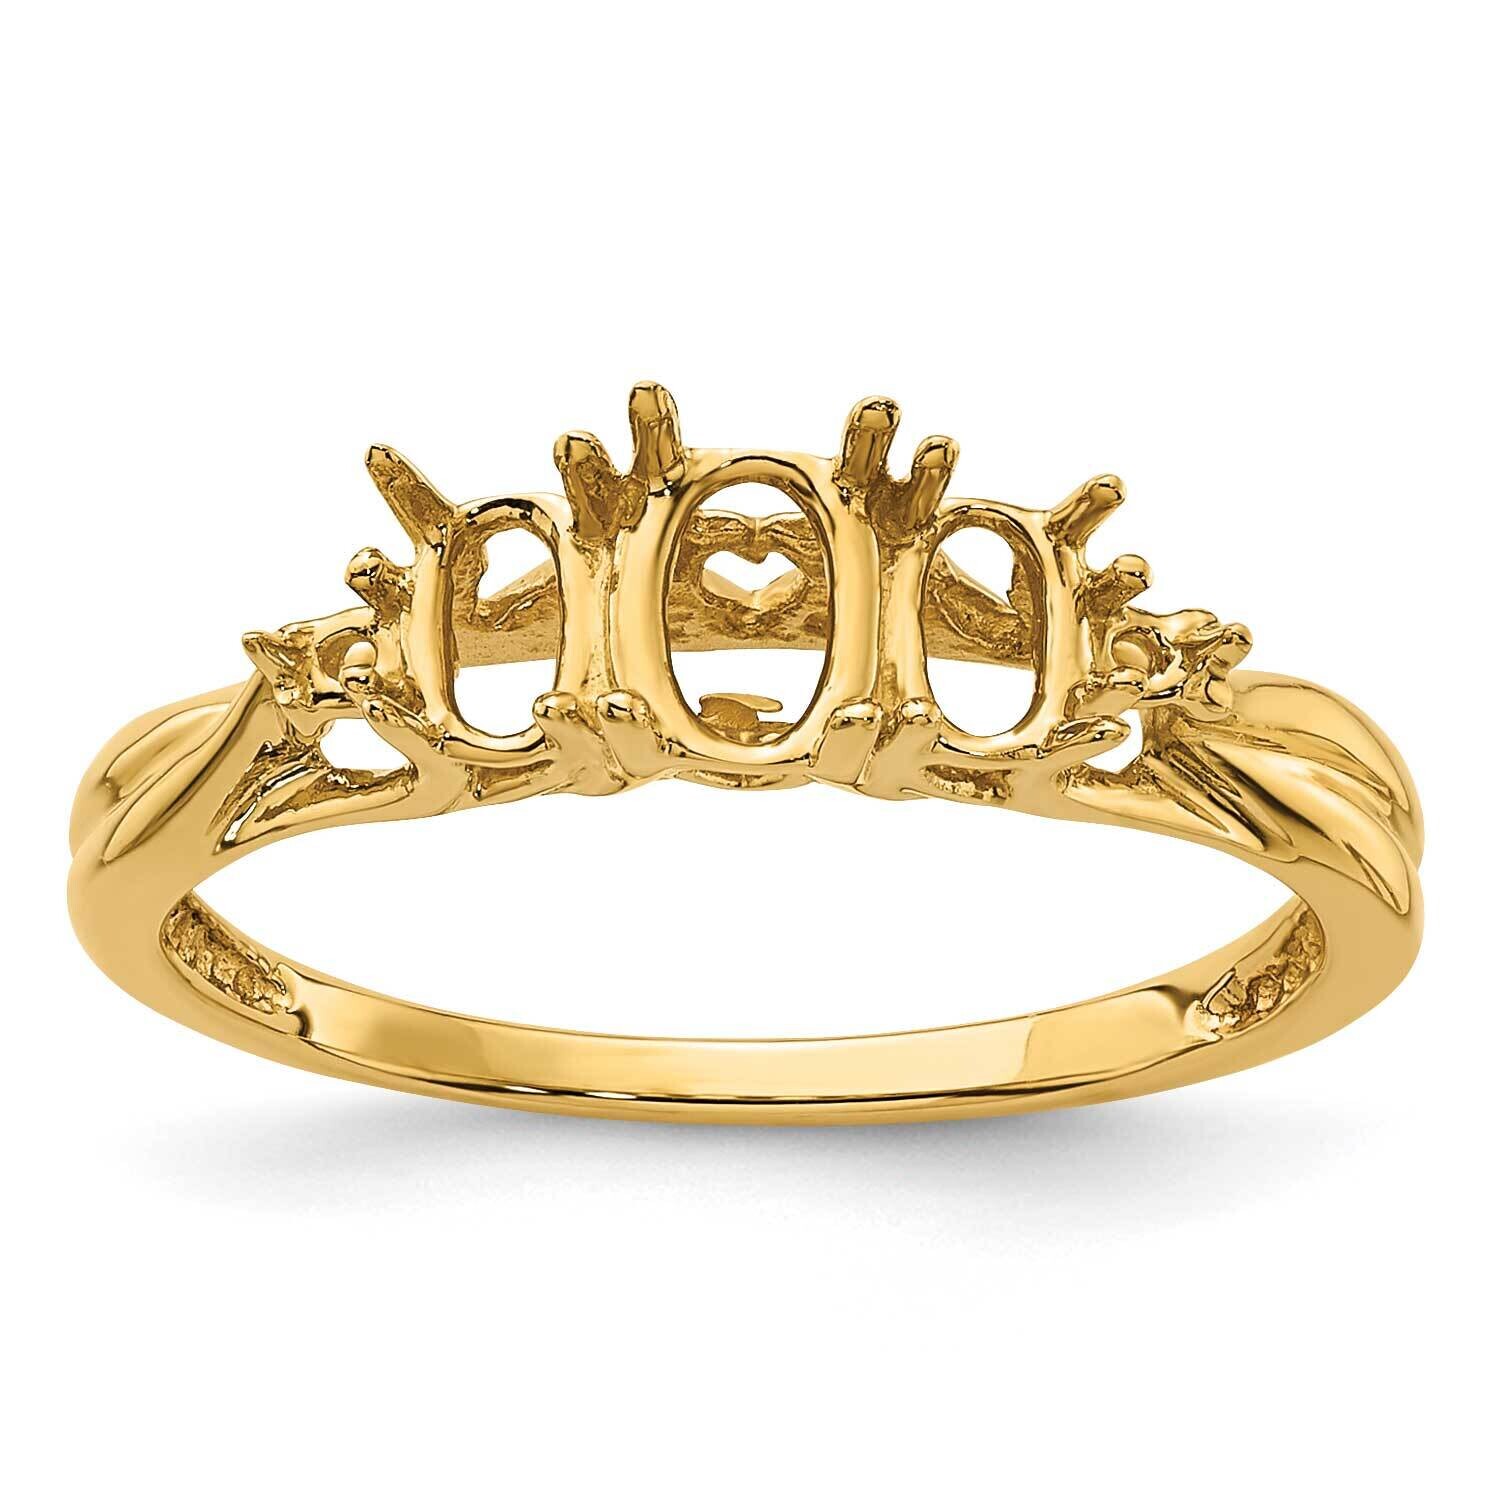 Diamond & Gemstone Ring Mounting 14k Gold Y4613